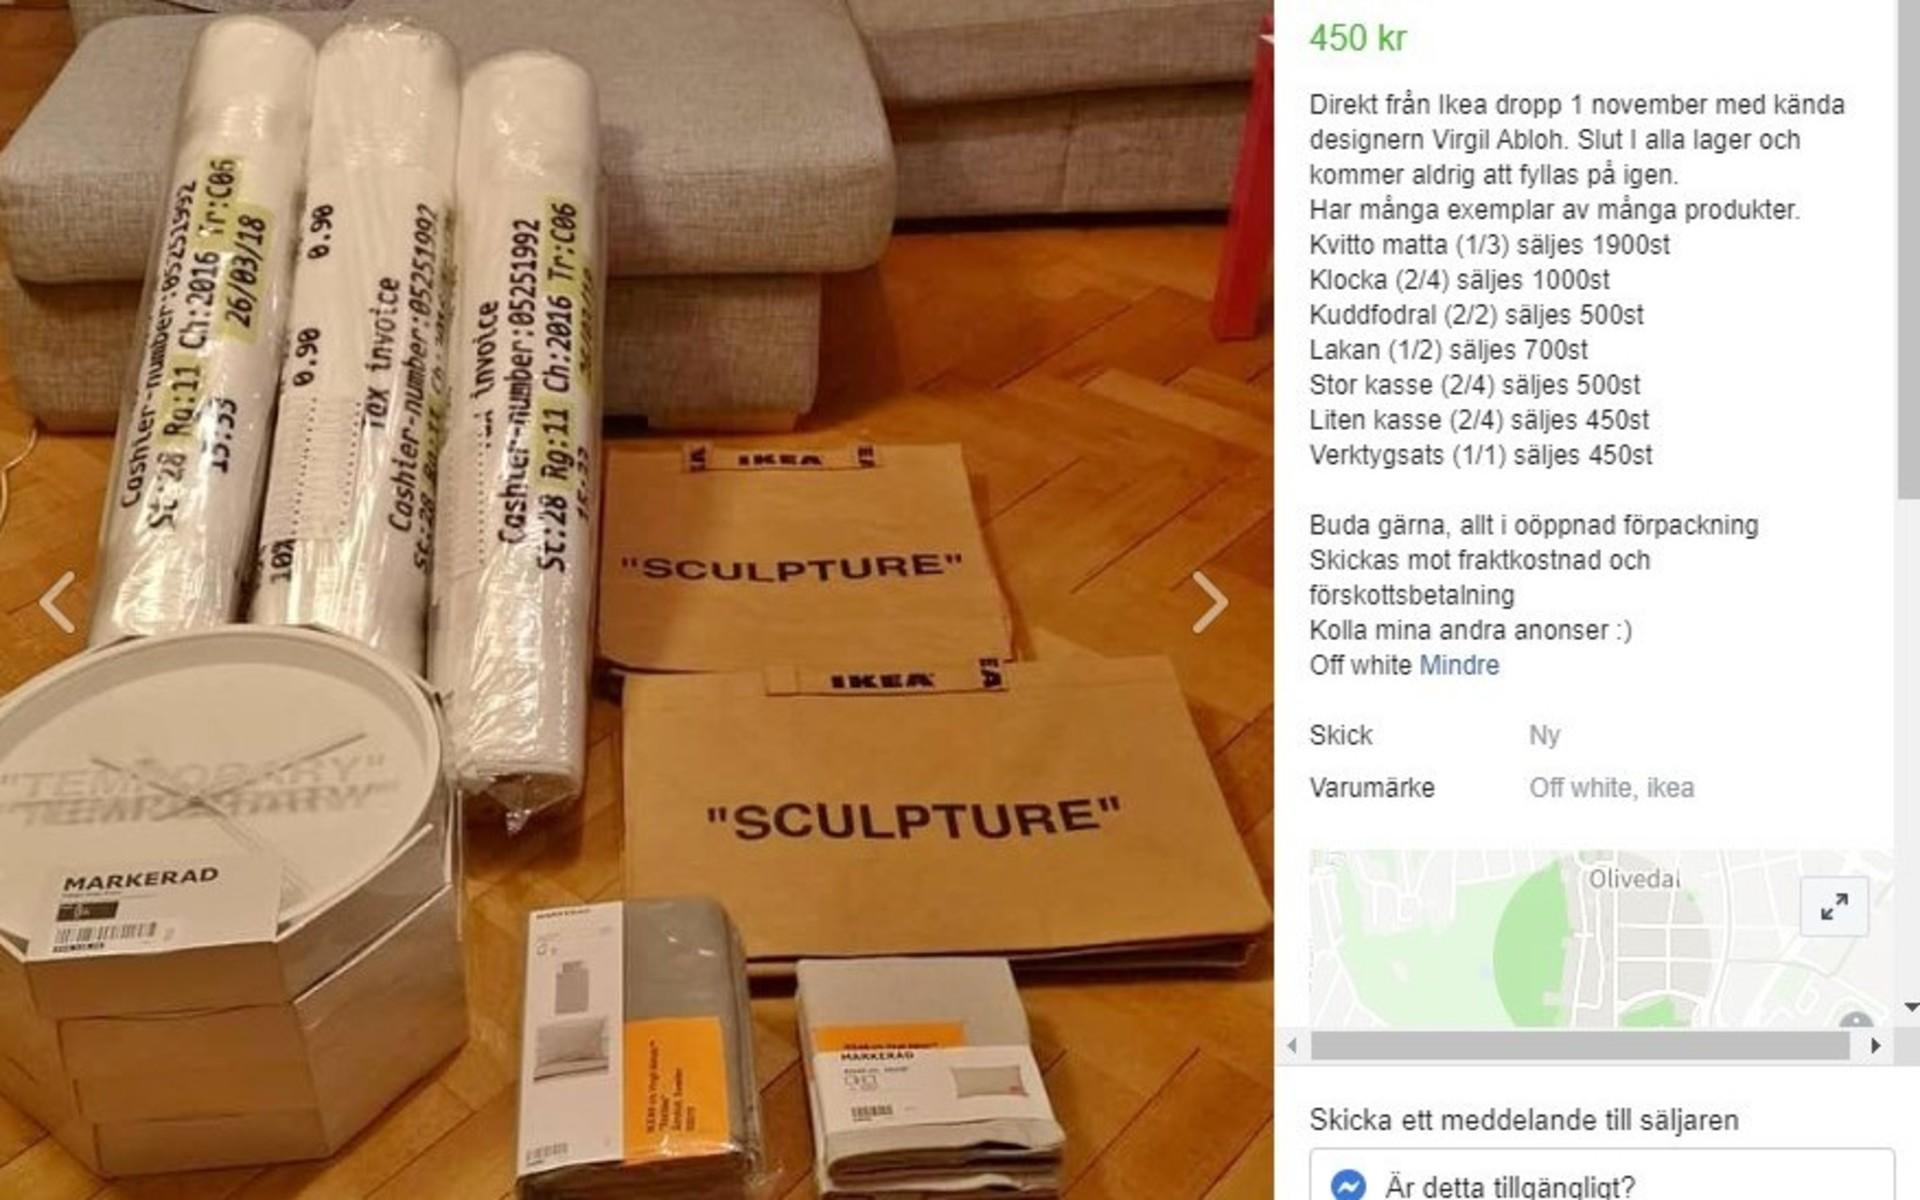 Inför släppet av kollektionen hade Ikea satt upp regeln att varje kund bara fick köpa varsitt exemplar av de 15 produkter som ingick i samarbetet.